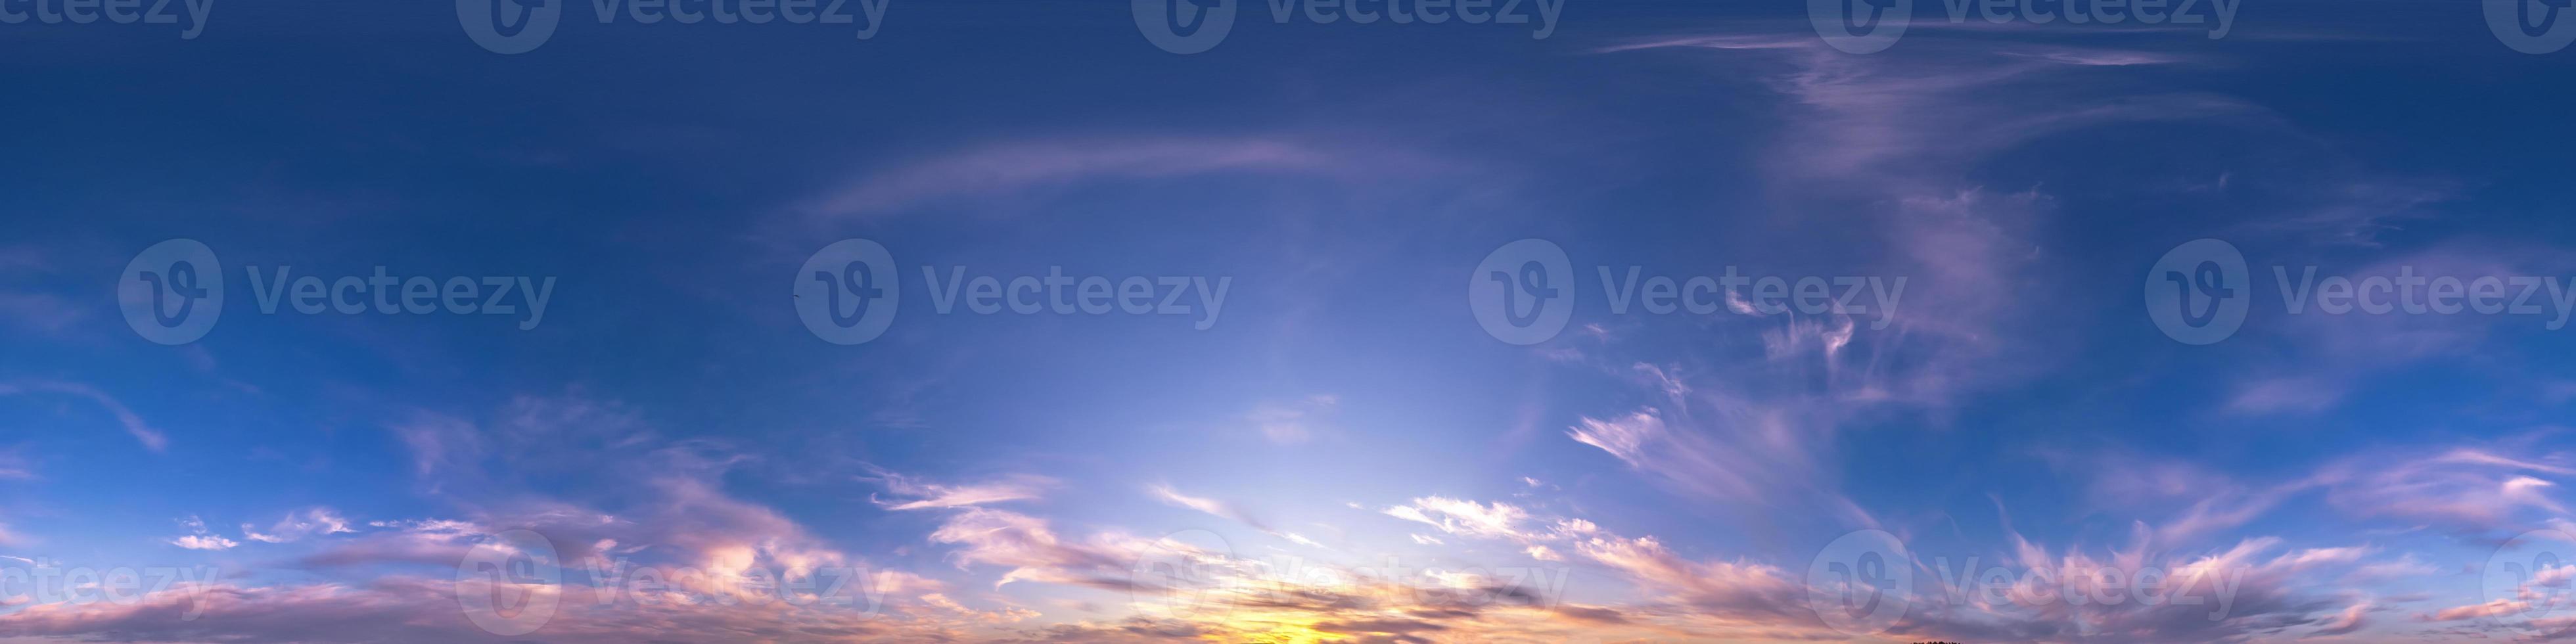 donkerblauwe lucht voor zonsondergang met prachtige wolken. naadloos hdri-panorama 360 graden hoekweergave met zenit voor gebruik in 3D-graphics of game-ontwikkeling als sky dome of edit drone shot foto